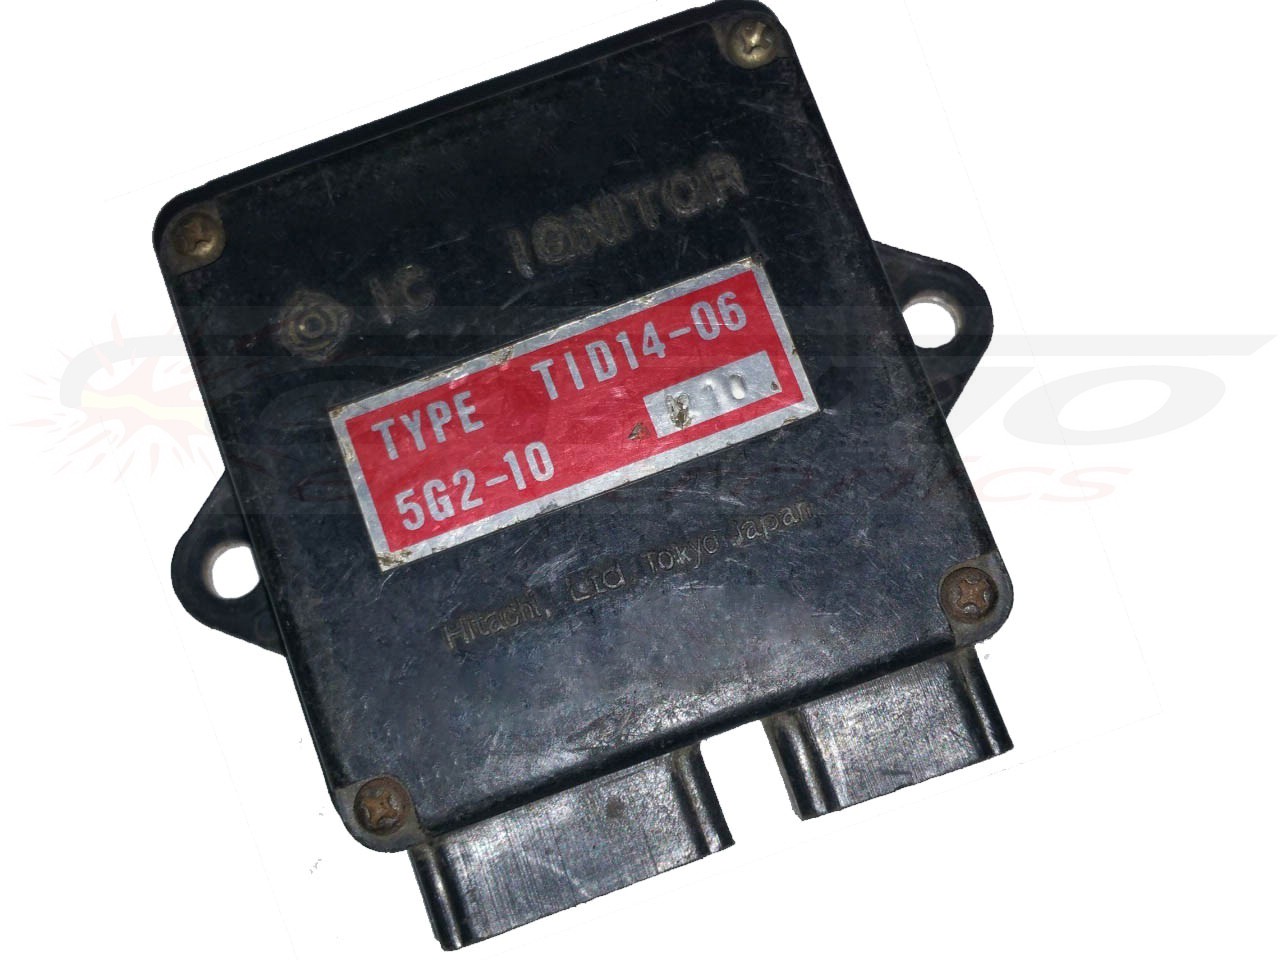 XJ650 XJ750 11M igniter ignition module TCI CDI Box (TID14-06, 5G2-10)